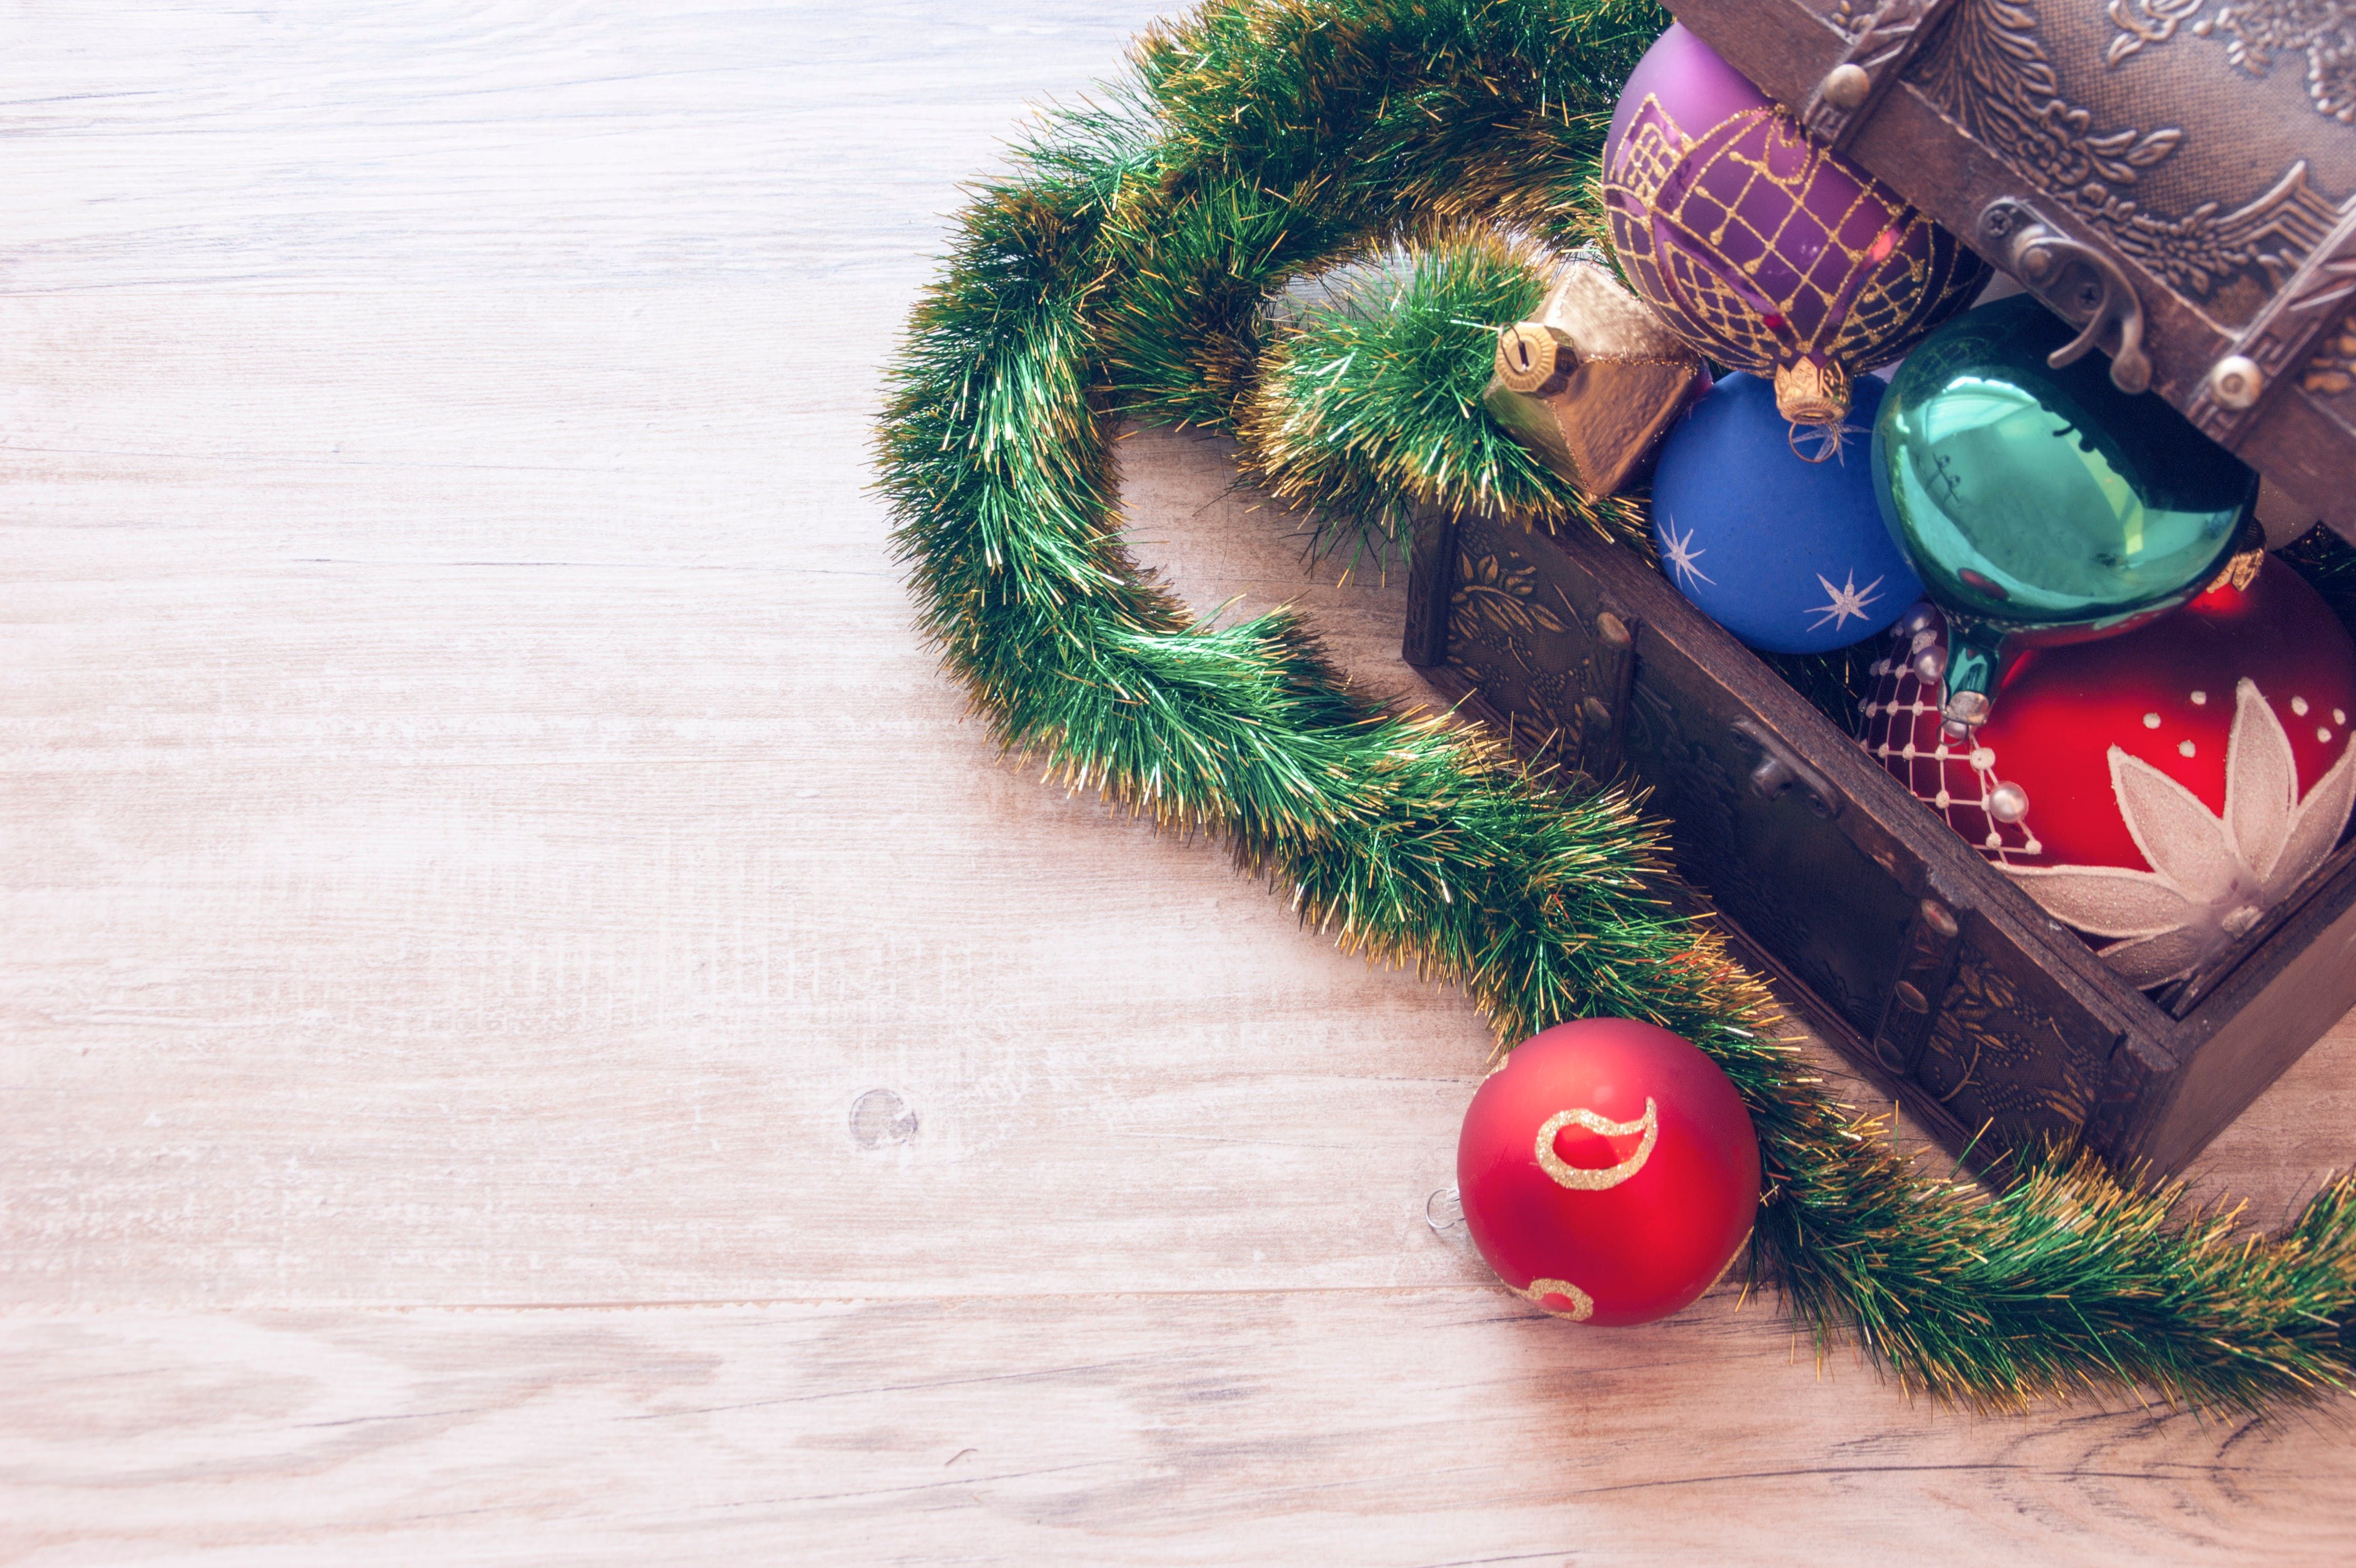 Убрать рождественские декорации и оставить дом уютным – вполне реальная задача